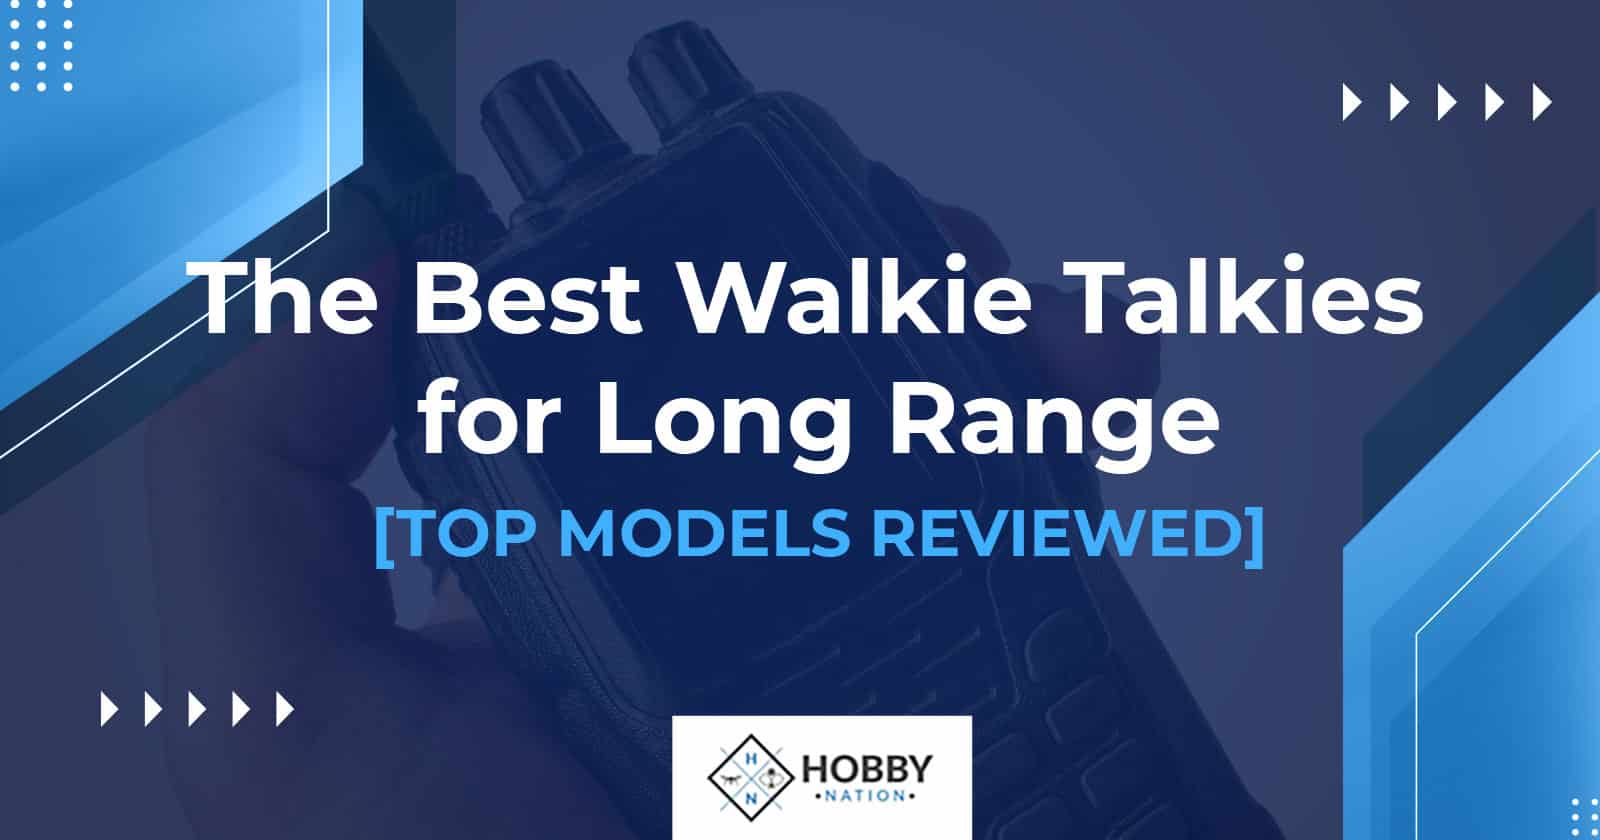 The Best Walkie Talkies for Long Range [TOP MODELS REVIEWED]